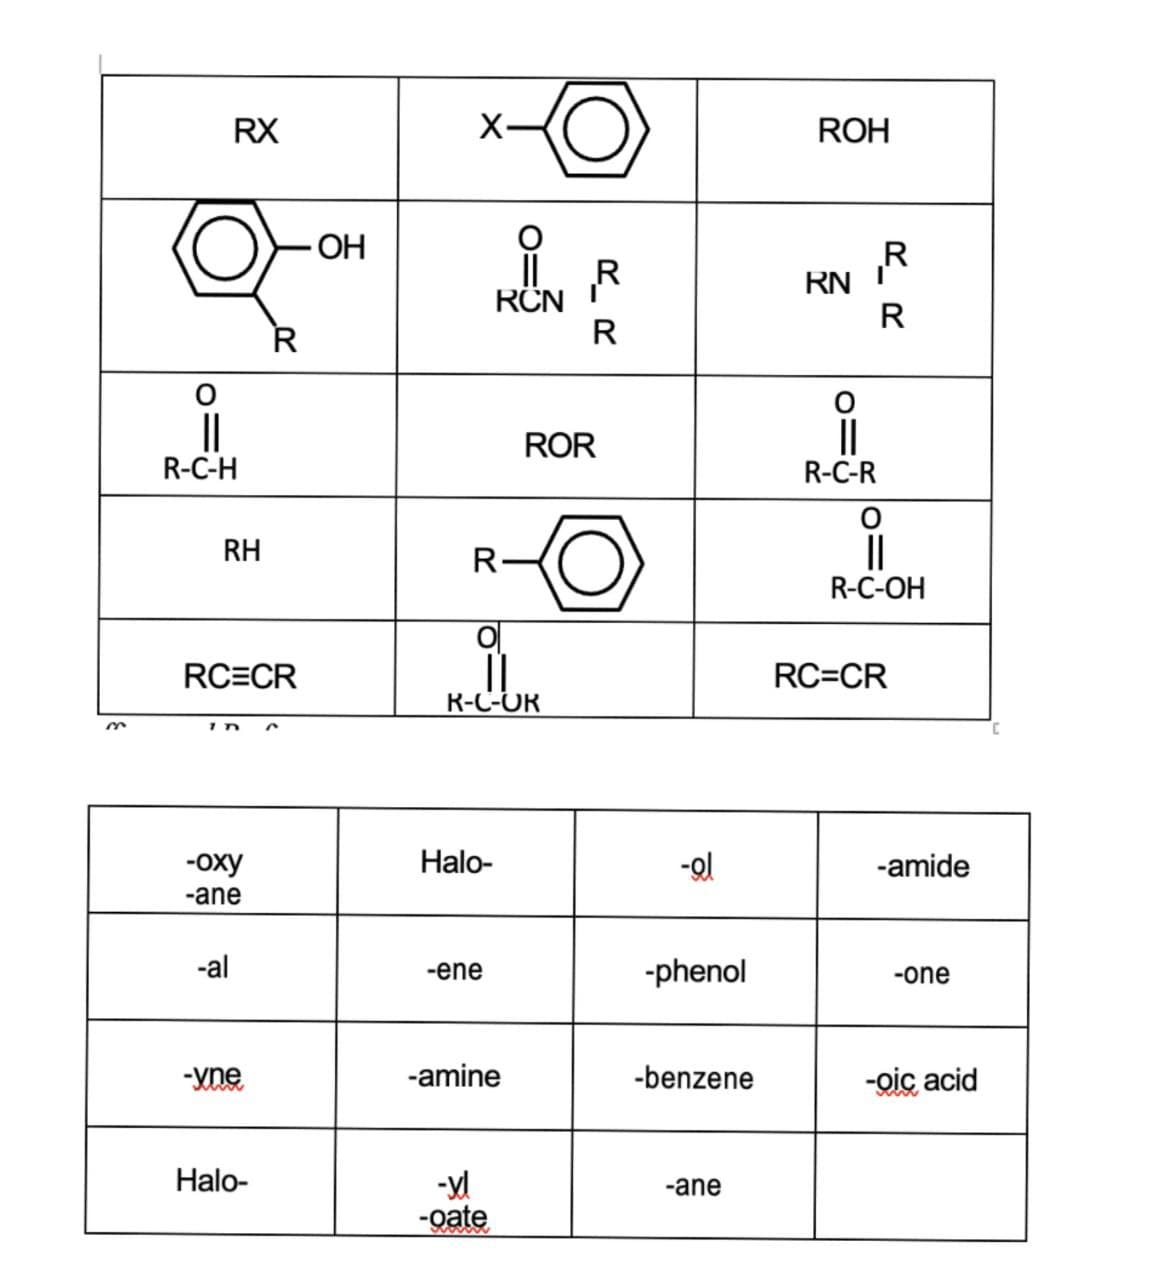 RX
X-
ROH
OH
R
RN
R
RCN
R
R
||
R-C-R
ROR
R-C-H
II
R-C-OH
RH
R-
RC=CR
RC=CR
R-C-OR
-оху
Halo-
-amide
-ane
-al
-ene
-phenol
-one
-yne
-amine
-benzene
-oic acid
Halo-
-ane
-oate
